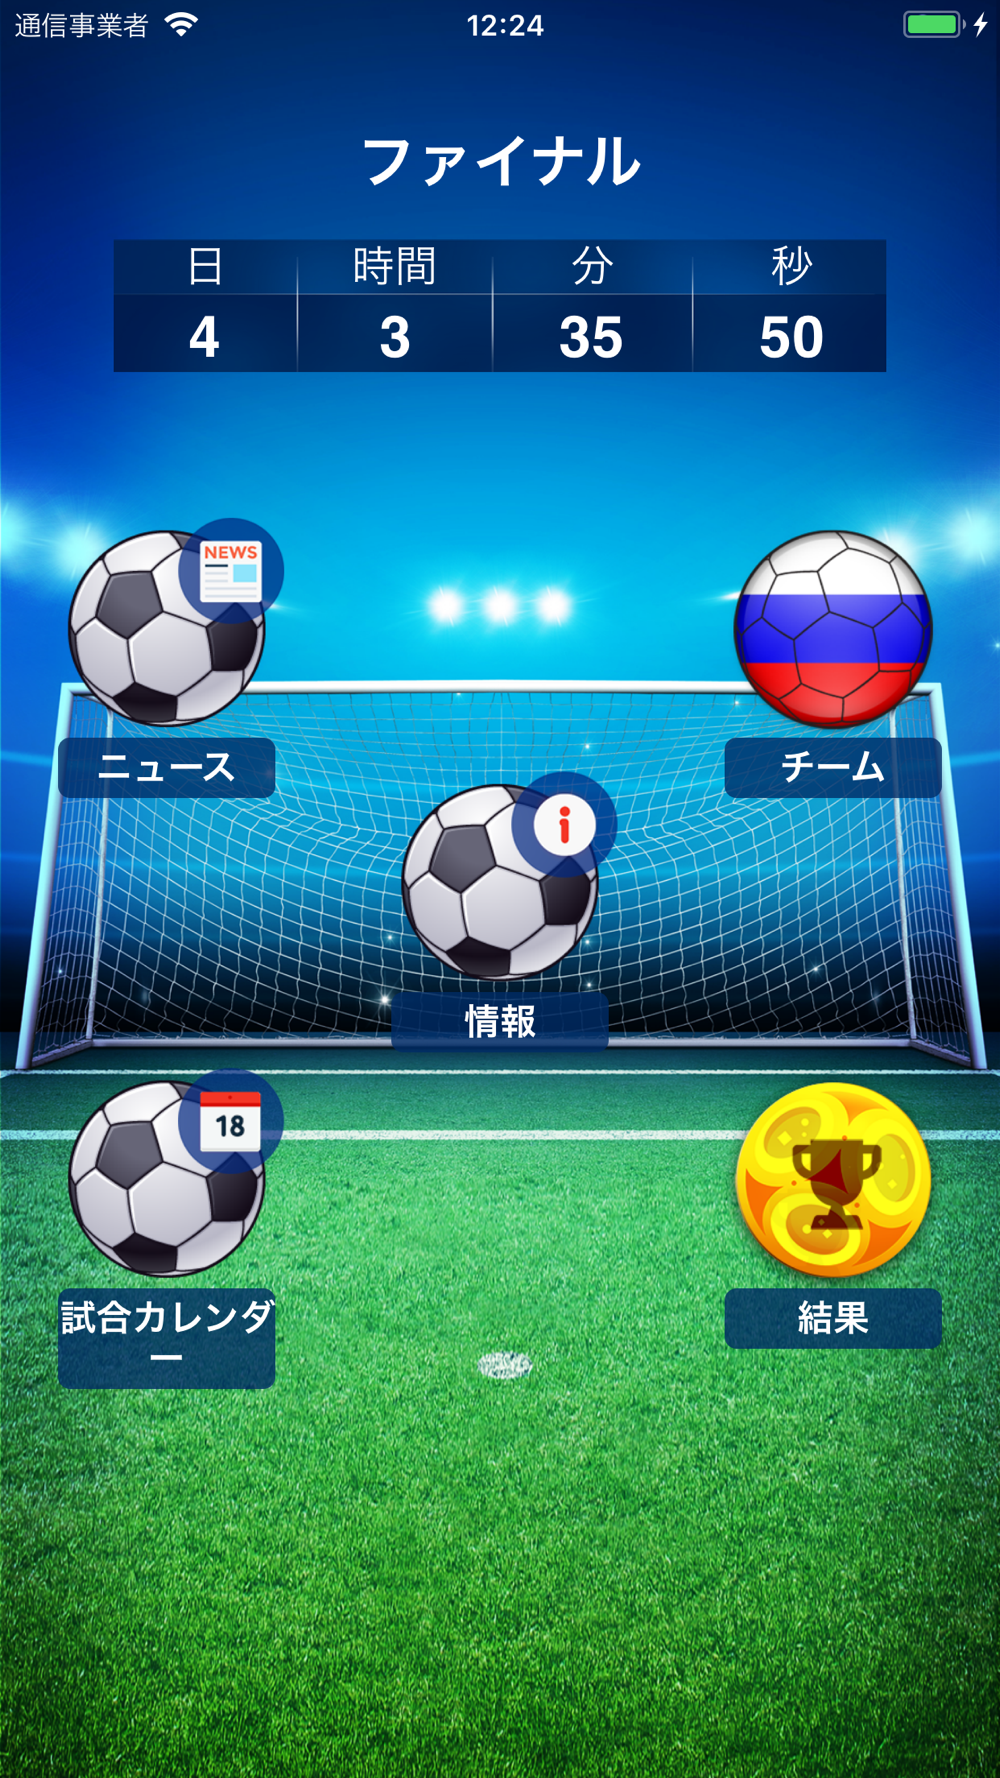 ワールドカレンダー18 サッカーカップ Free Download App For Iphone Steprimo Com